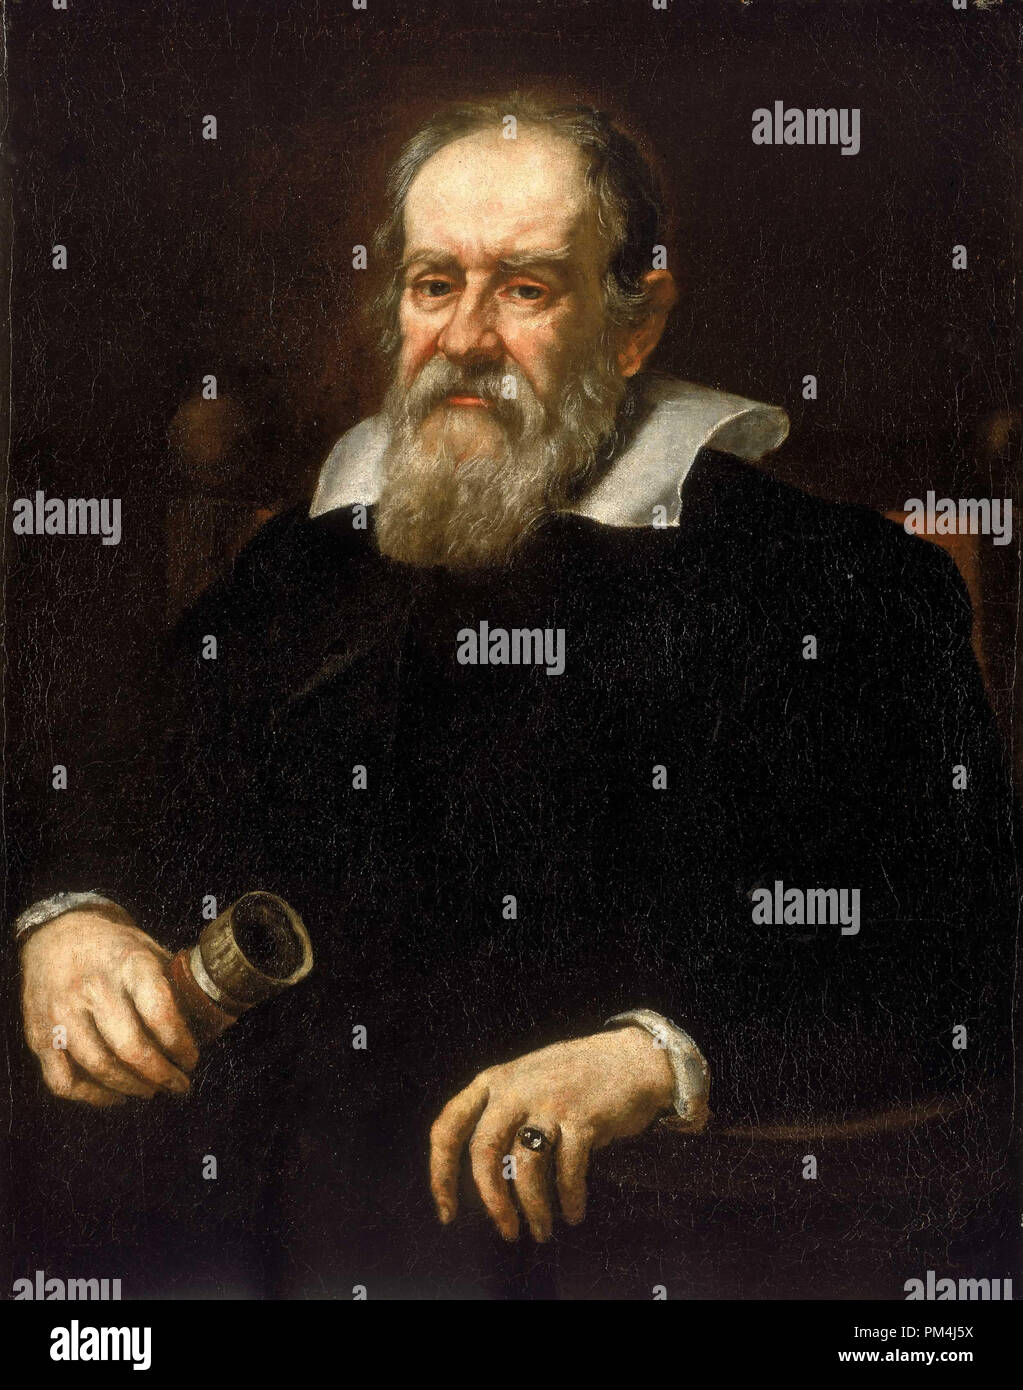 Portrait von Galileo Galilei (1564-1642), Gemälde von flämischen Maler Justus Sustermans, 1636. Malerei aktuelle Lage, das National Maritime Museum, Greenwich, London Datei Referenz Nr. 1003 543 THA Stockfoto